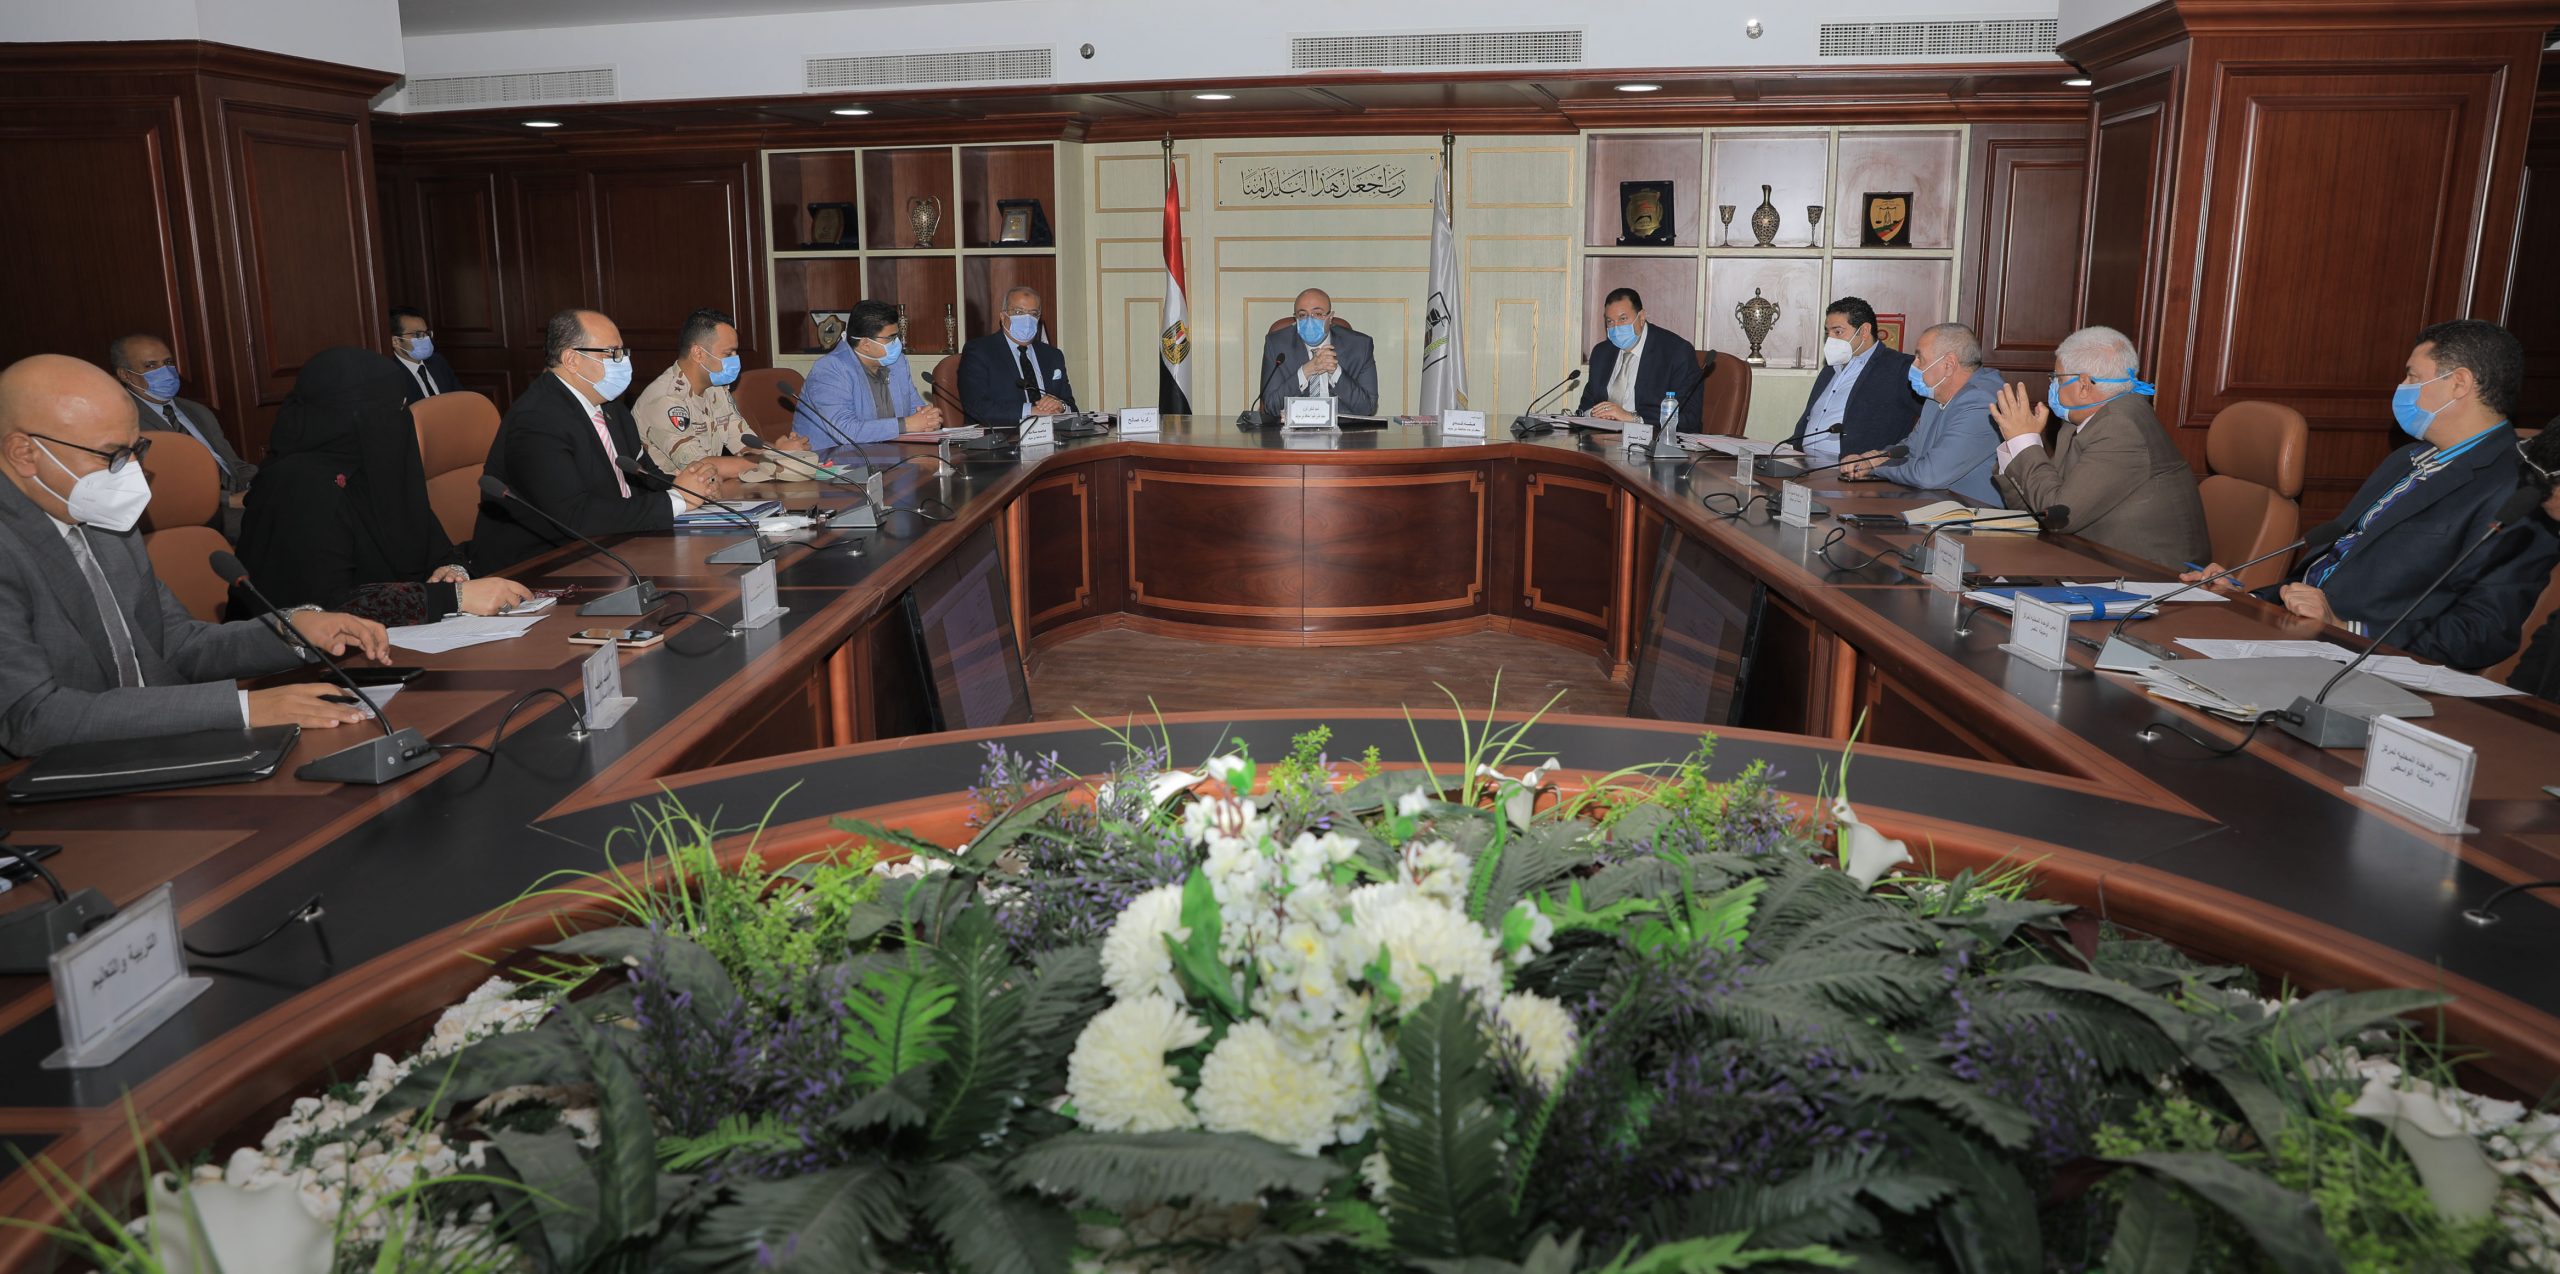   محافظ بني سويف يهنئ أعضاء المجلس التنفيذي بالذكرى الـ 7 لثورة 30 يونيو المجيدة